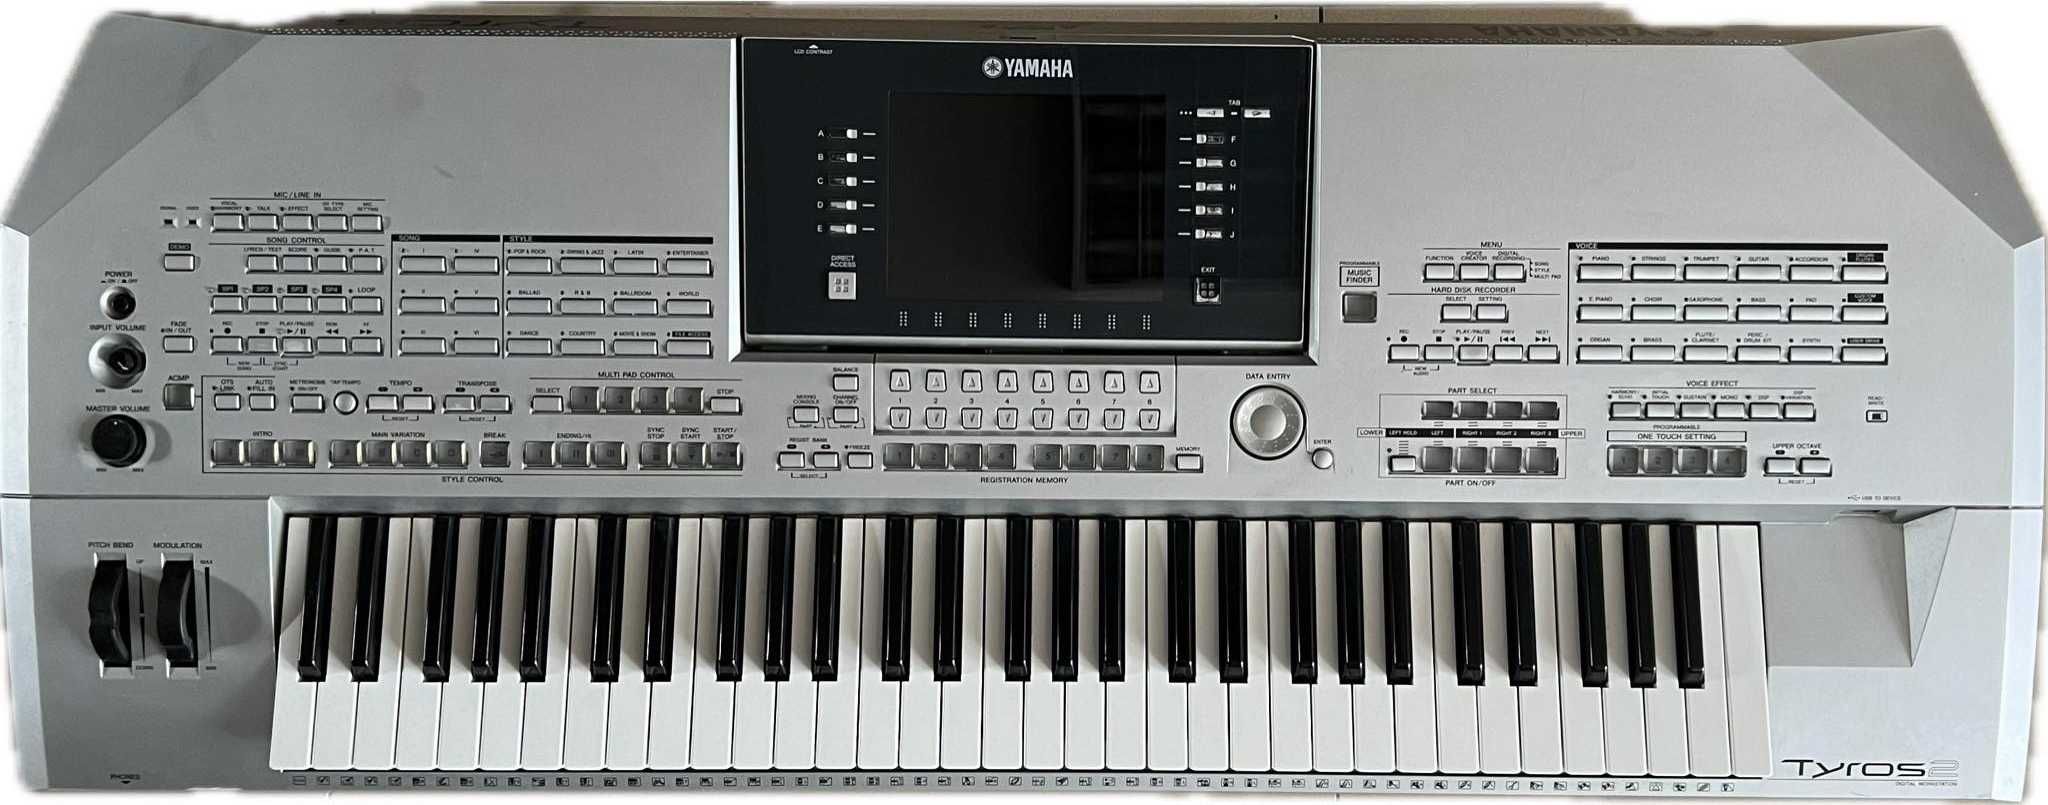 Keyboard Yamaha Tyros 2